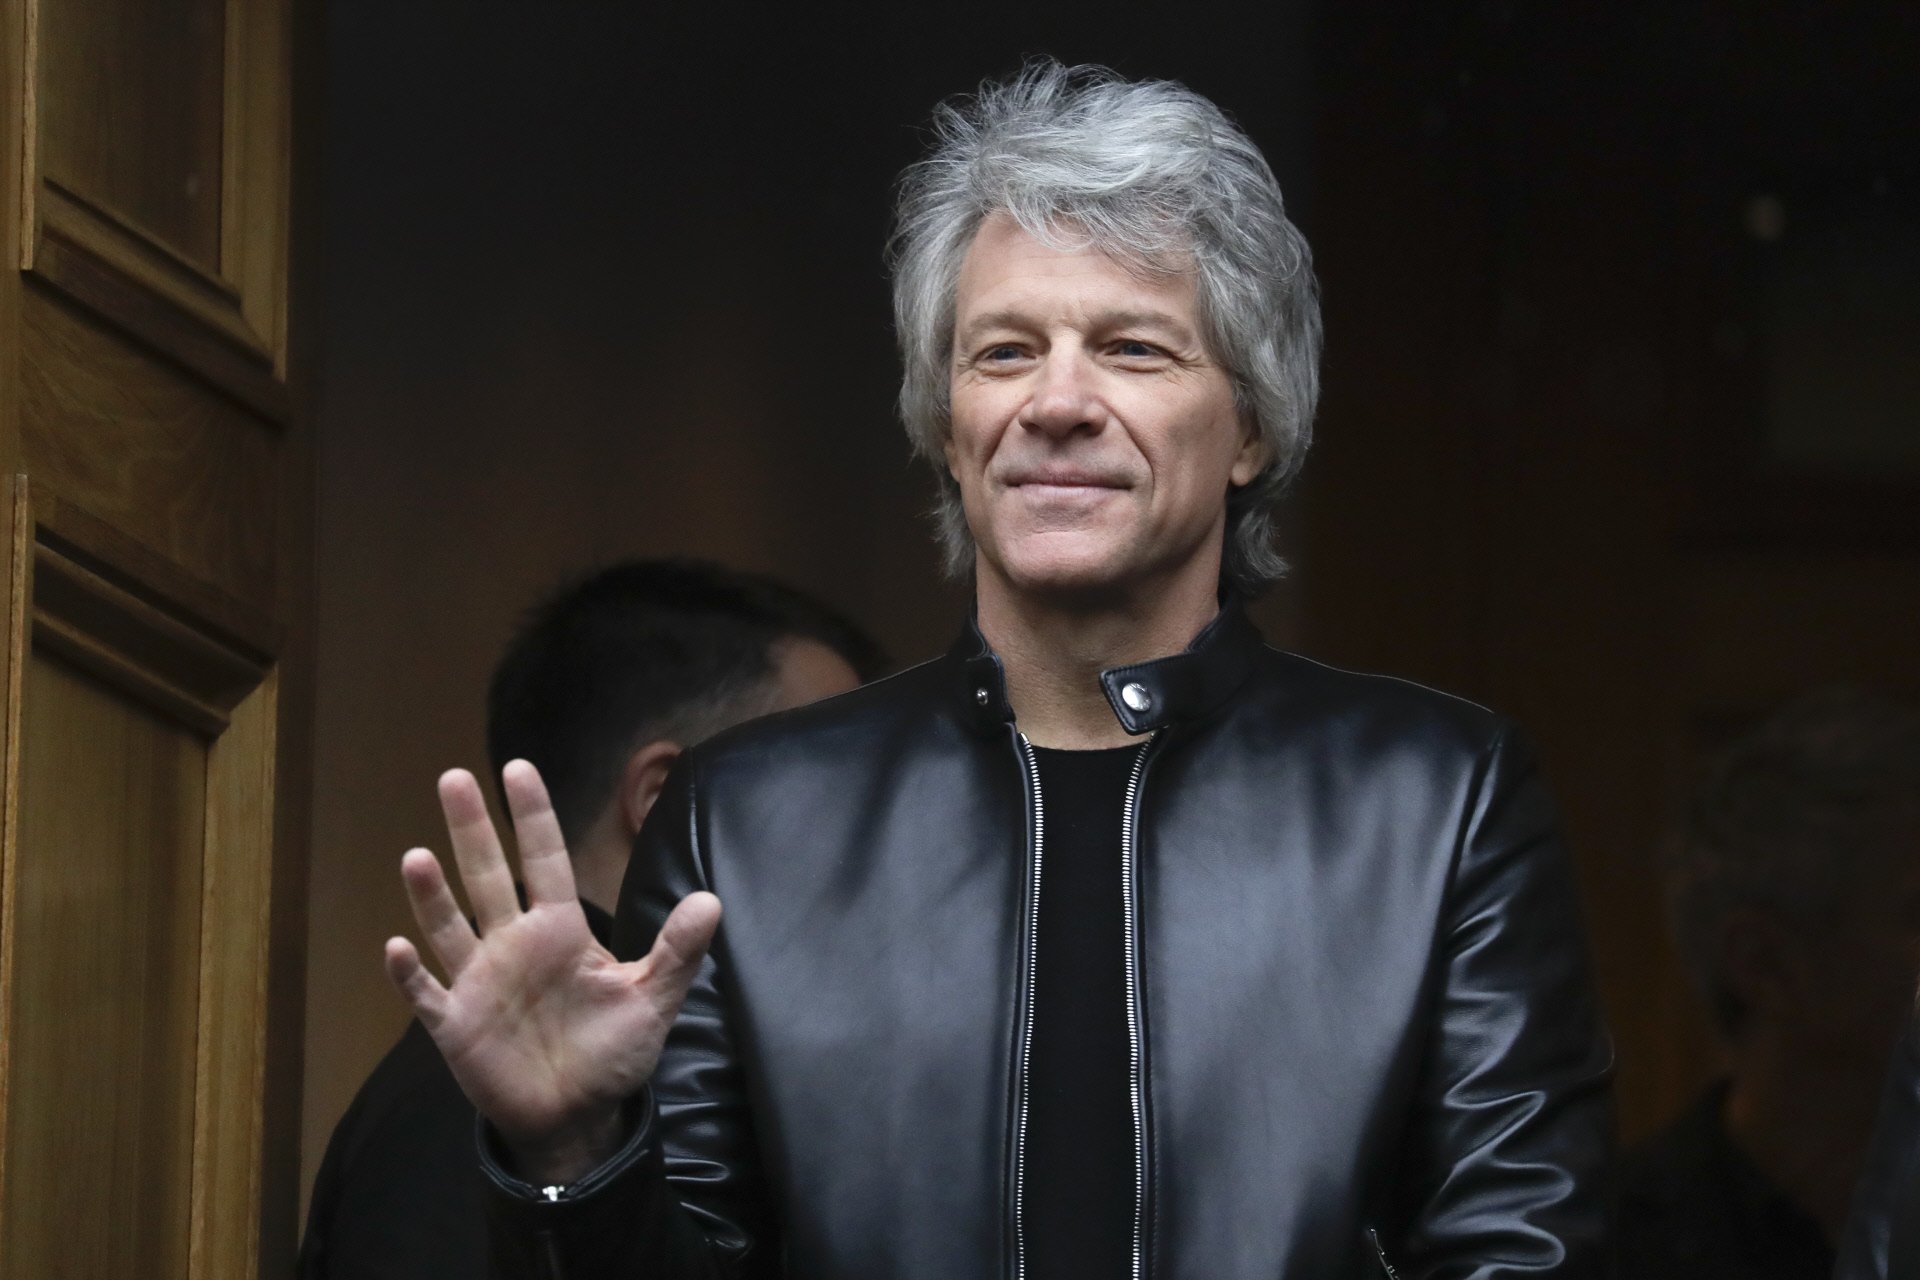 Retirat, Jon Bon Jovi dona per liquidada la seva carrera musical per un tema de salut